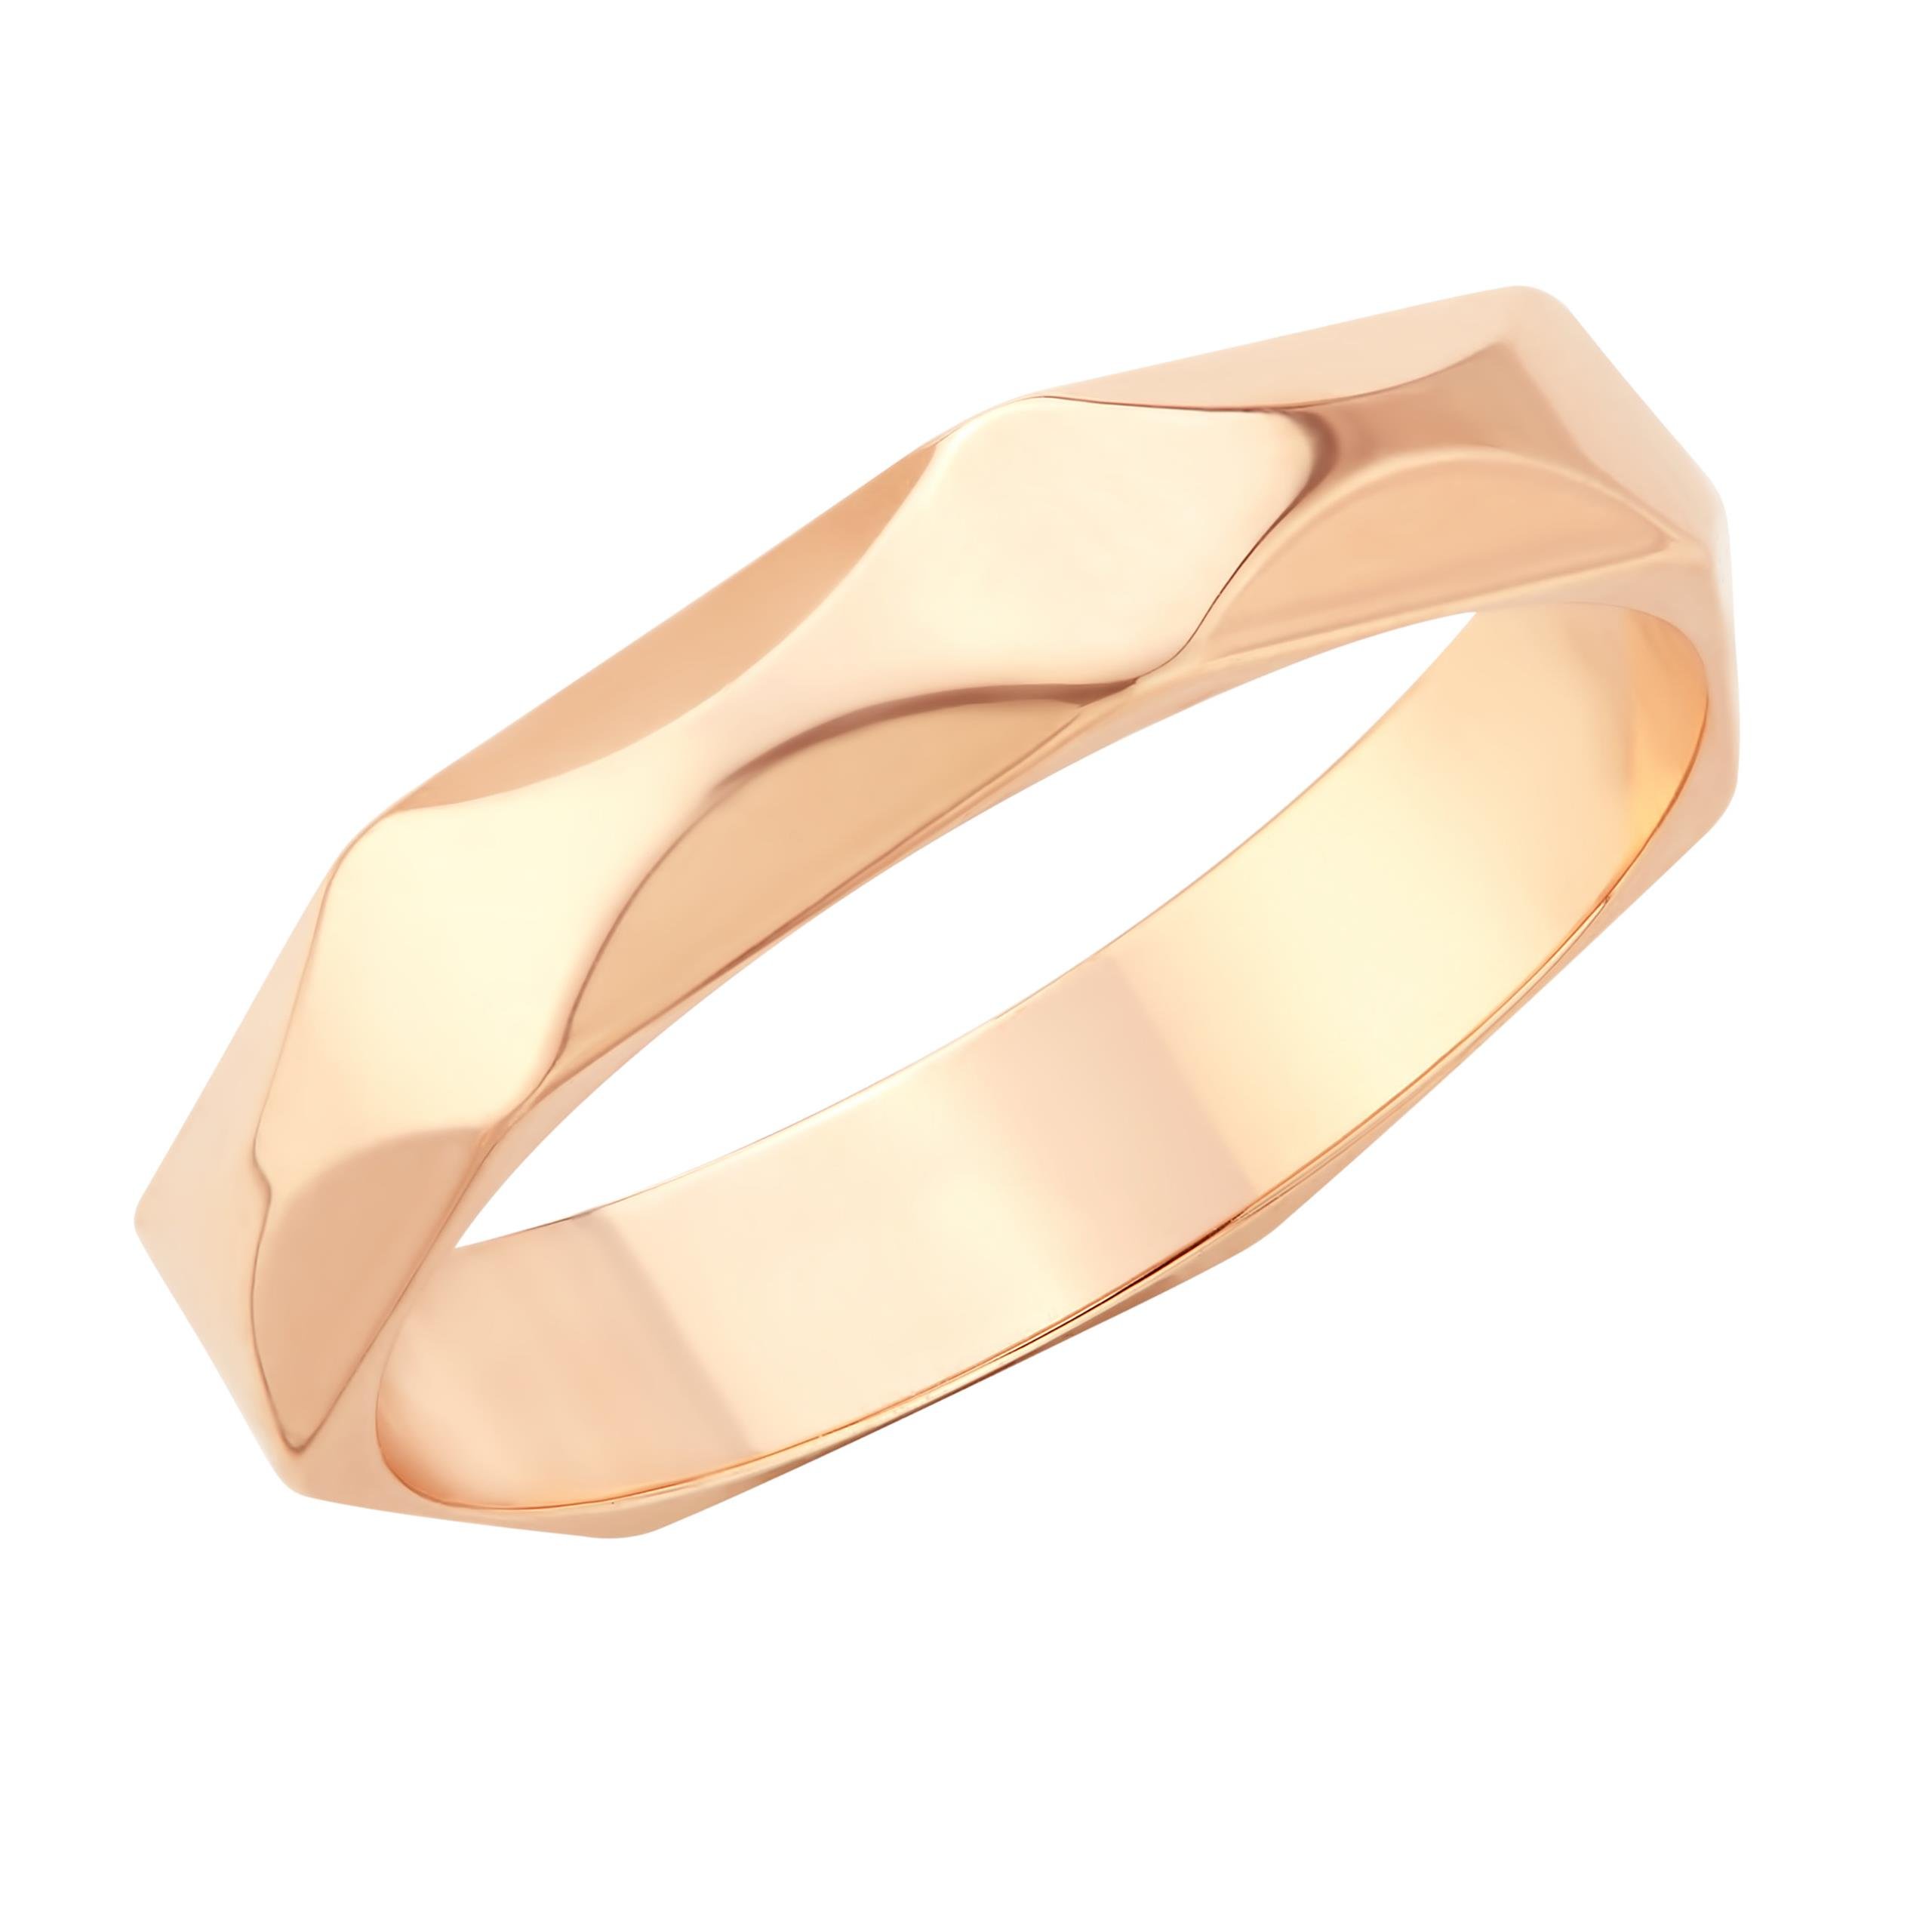 Золотое кольцо с алмазной гранью. Кольцо обручальное с гранью 17005. Обручальное кольцо Соколов с алмазной гранью. Обручальное кольцо из белого золота с алмазной гранью. Кольца с алмазной гранью золотые обручальные.